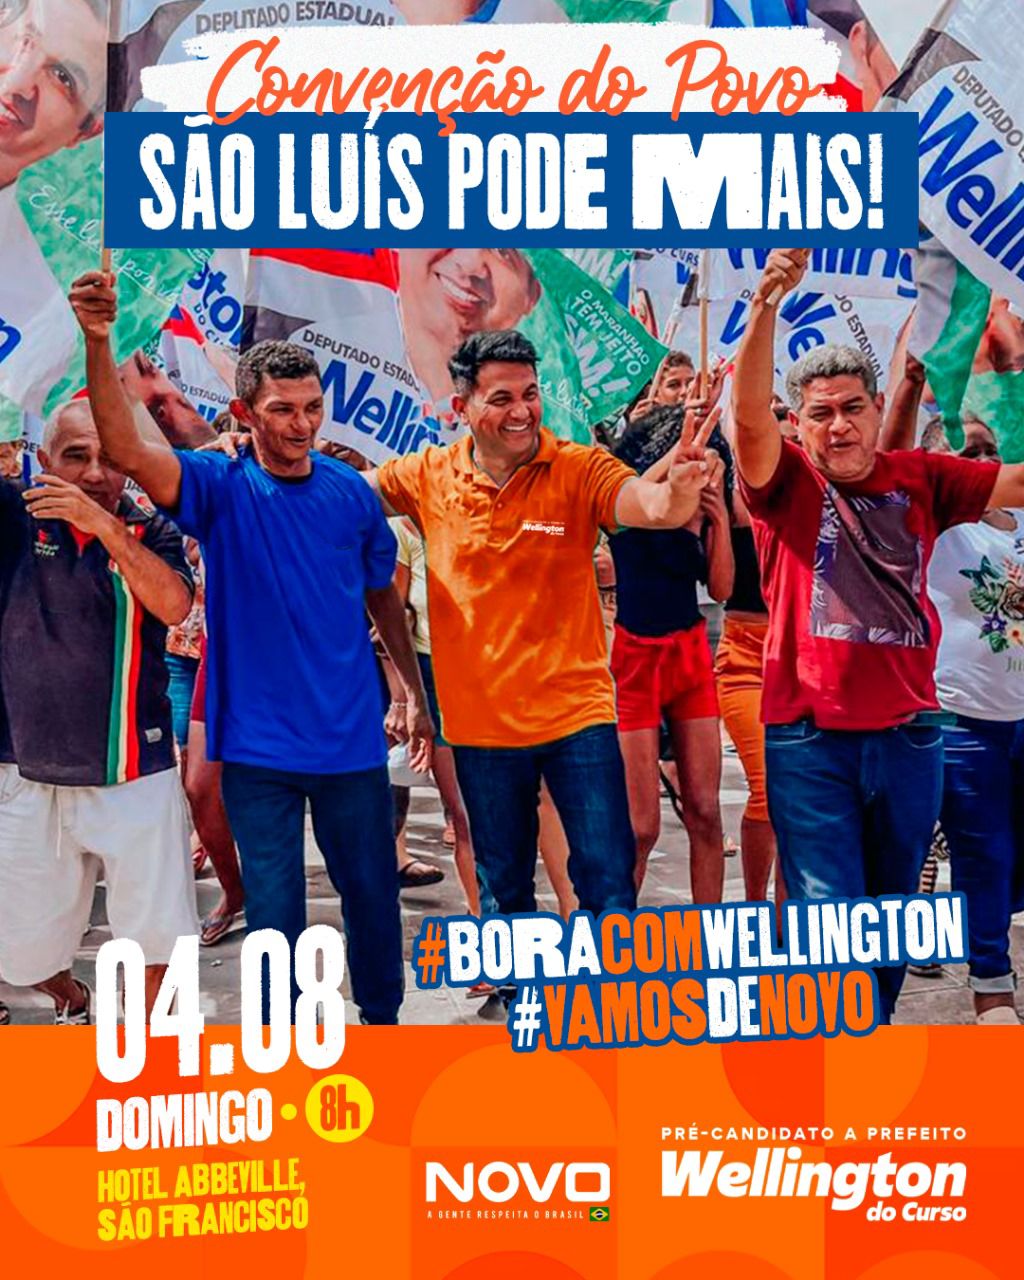 Wellington do Curso confirma local de convenção para candidatura a prefeito de São Luís